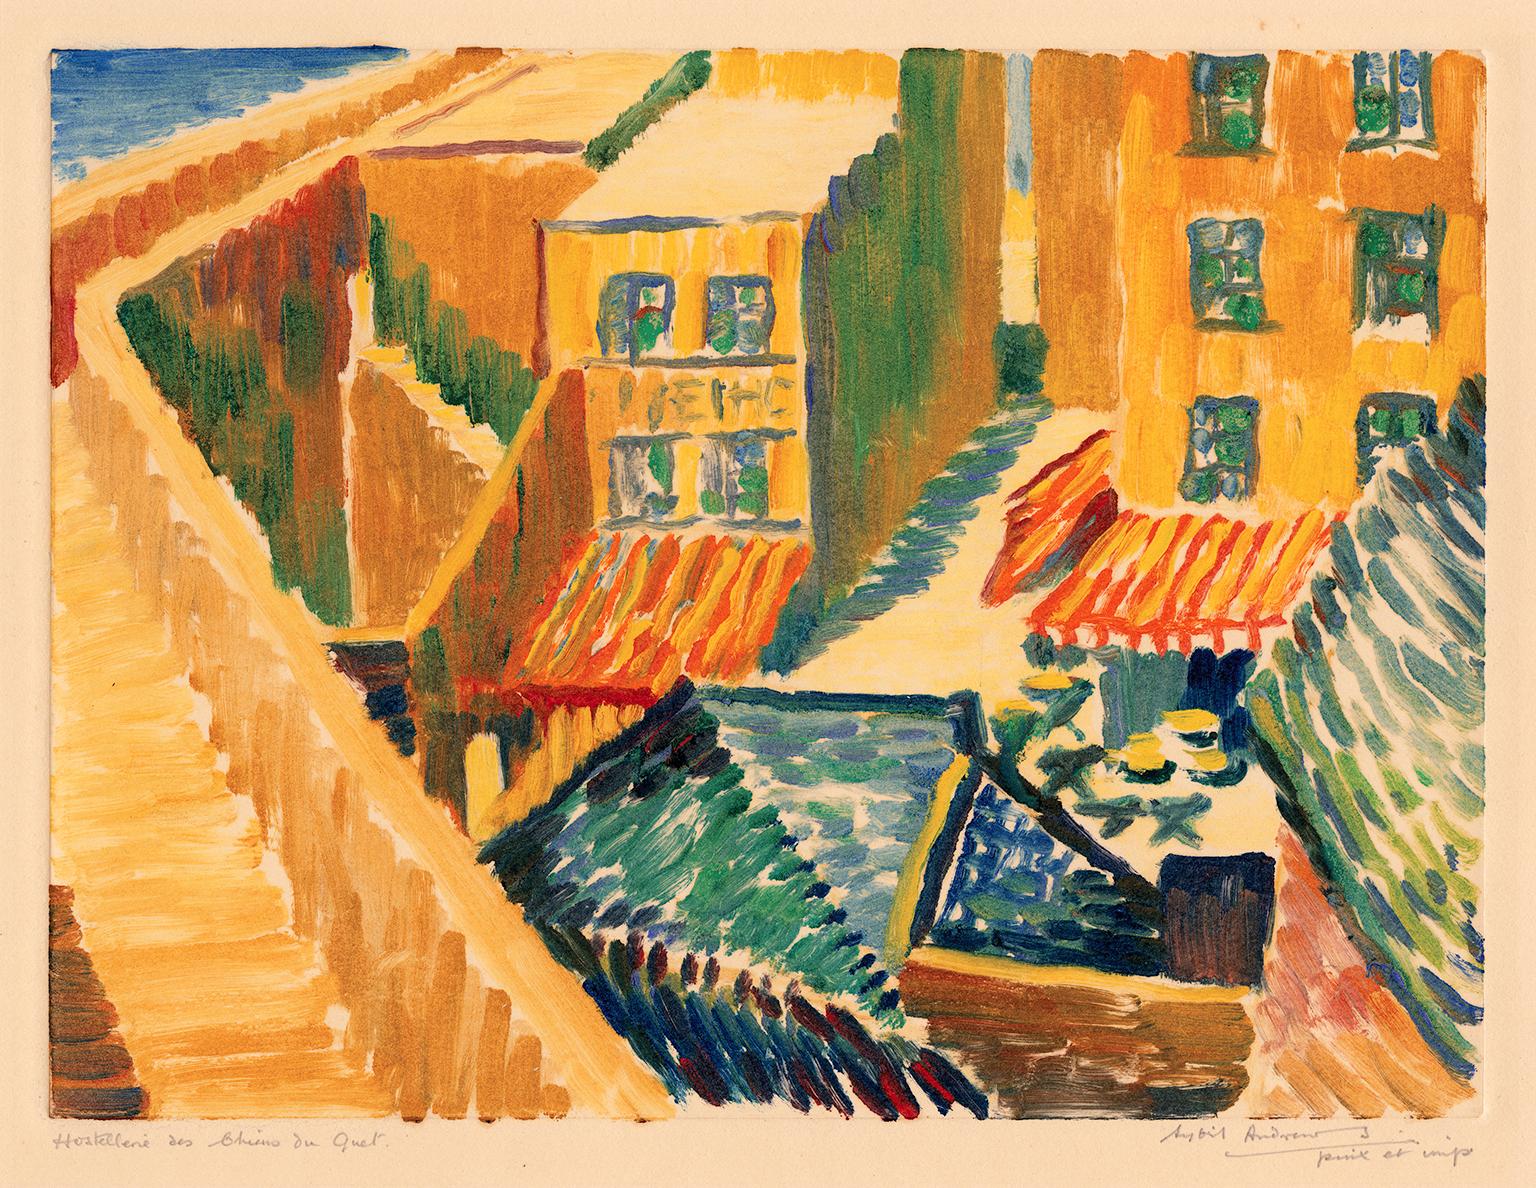 Sybil Andrews Figurative Print – Hostellerie des Chiens du Guet" - Britischer Impressionismus der 1920er Jahre